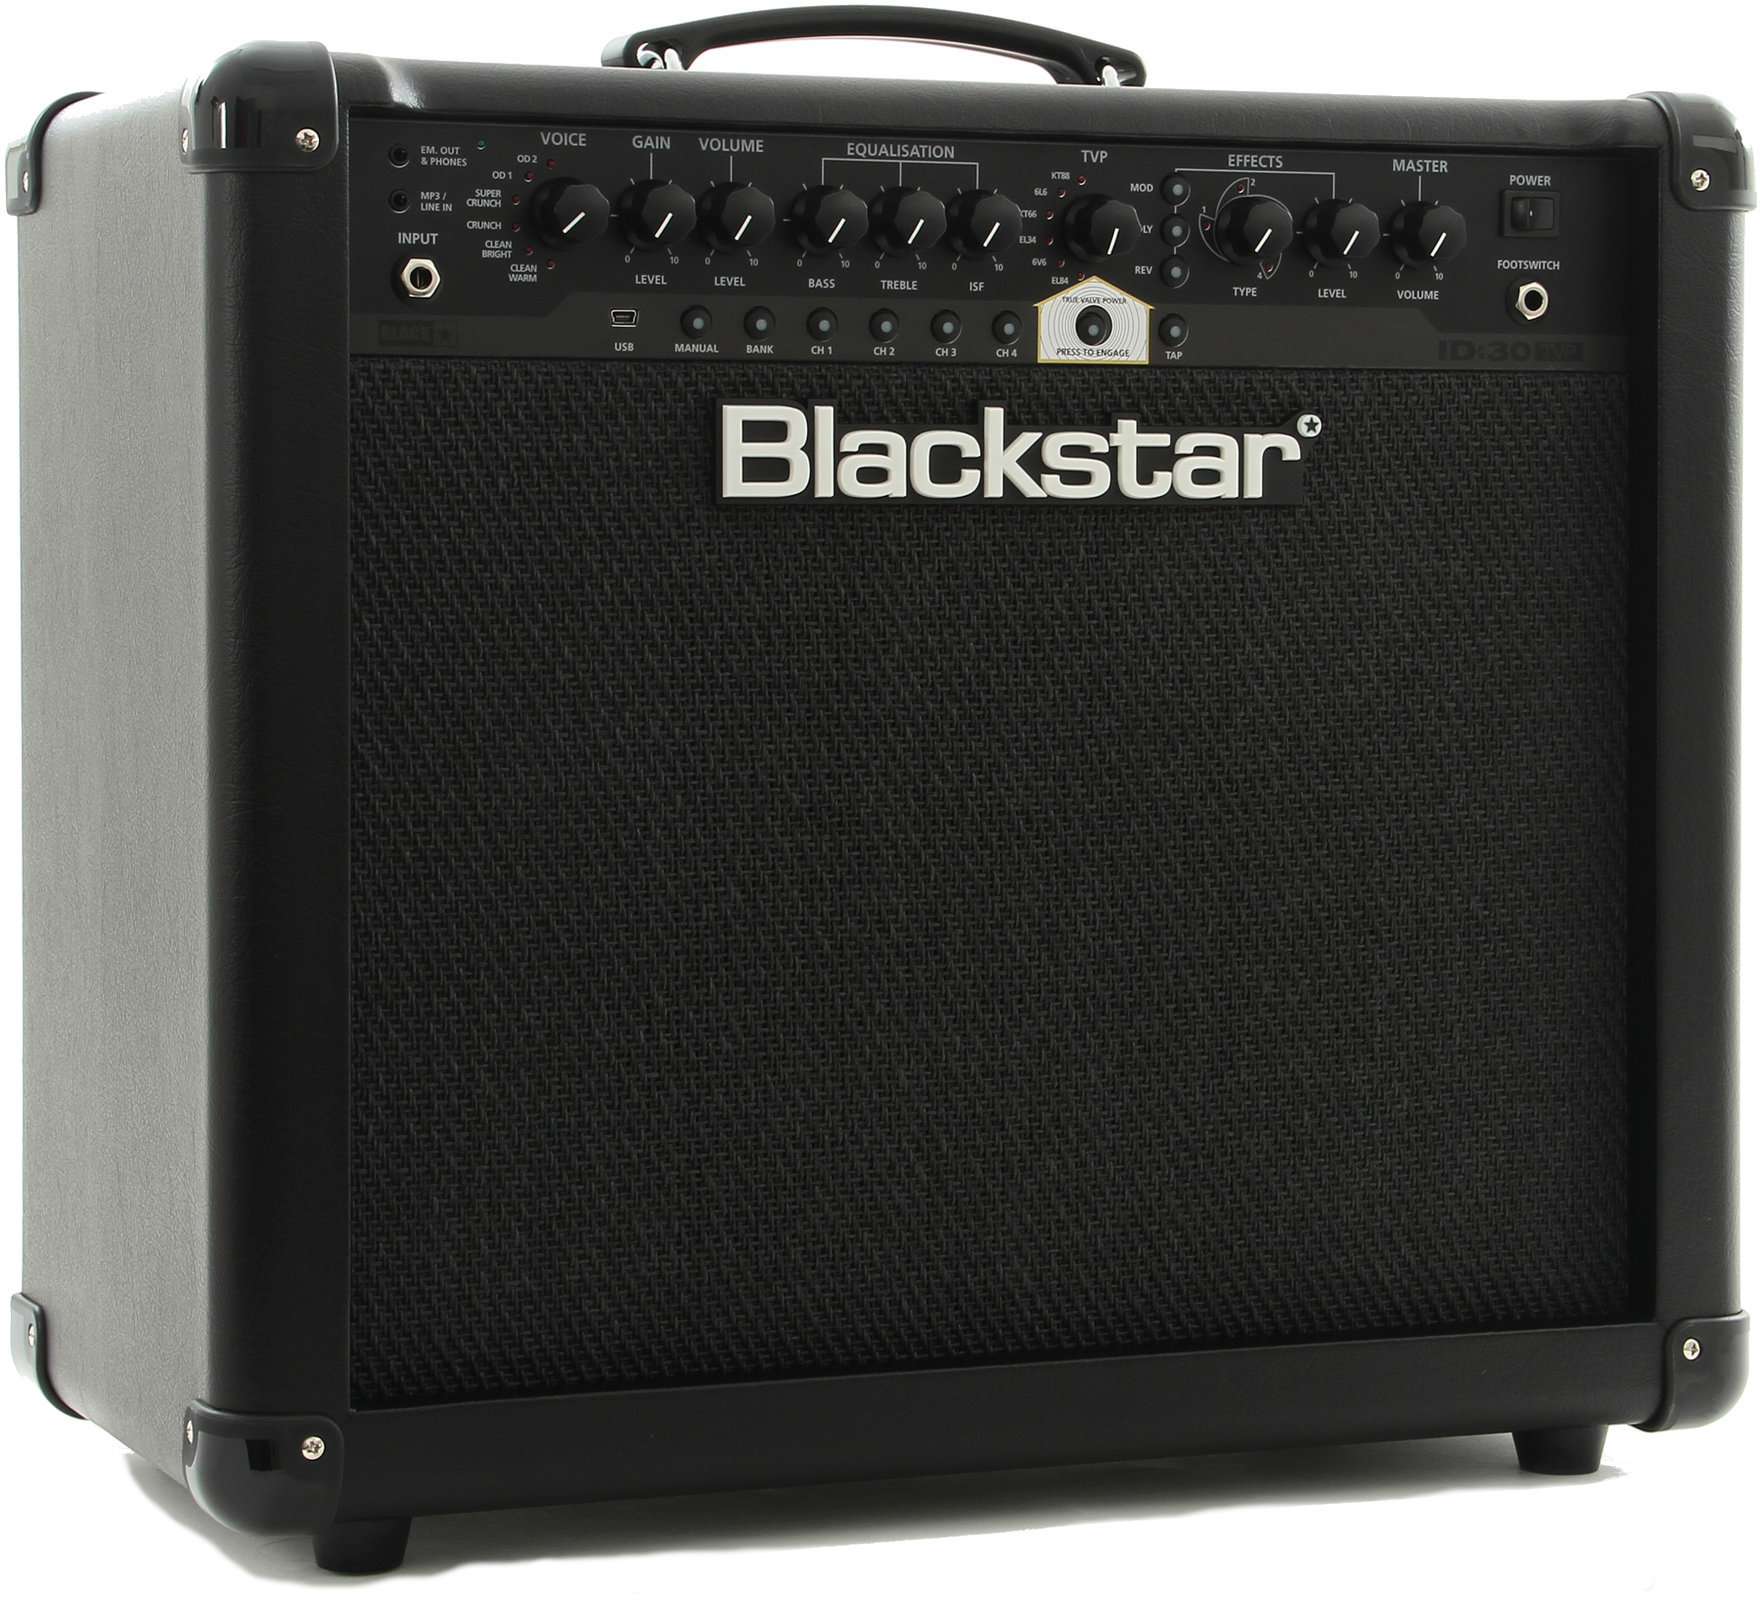 Modelling gitarsko combo pojačalo Blackstar 30 TVP